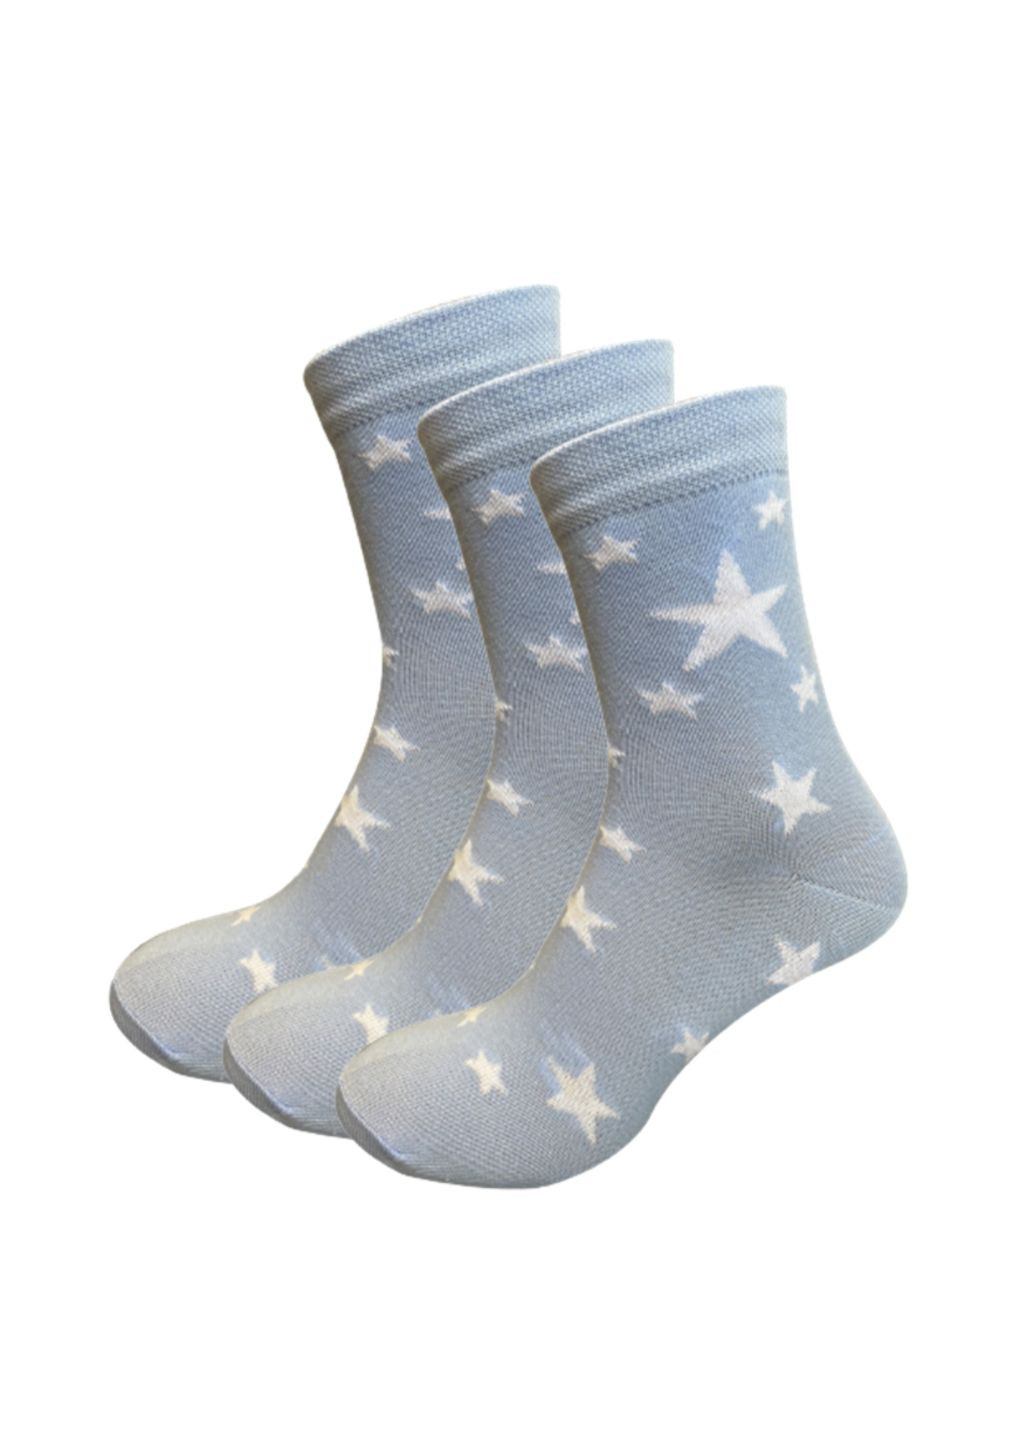 RFT Шкарпетки жін. клас./RT1312-072/зірочки/36-39/блакитний. Набір (3 шт.) Siela rt1312-072_набори (260063051)